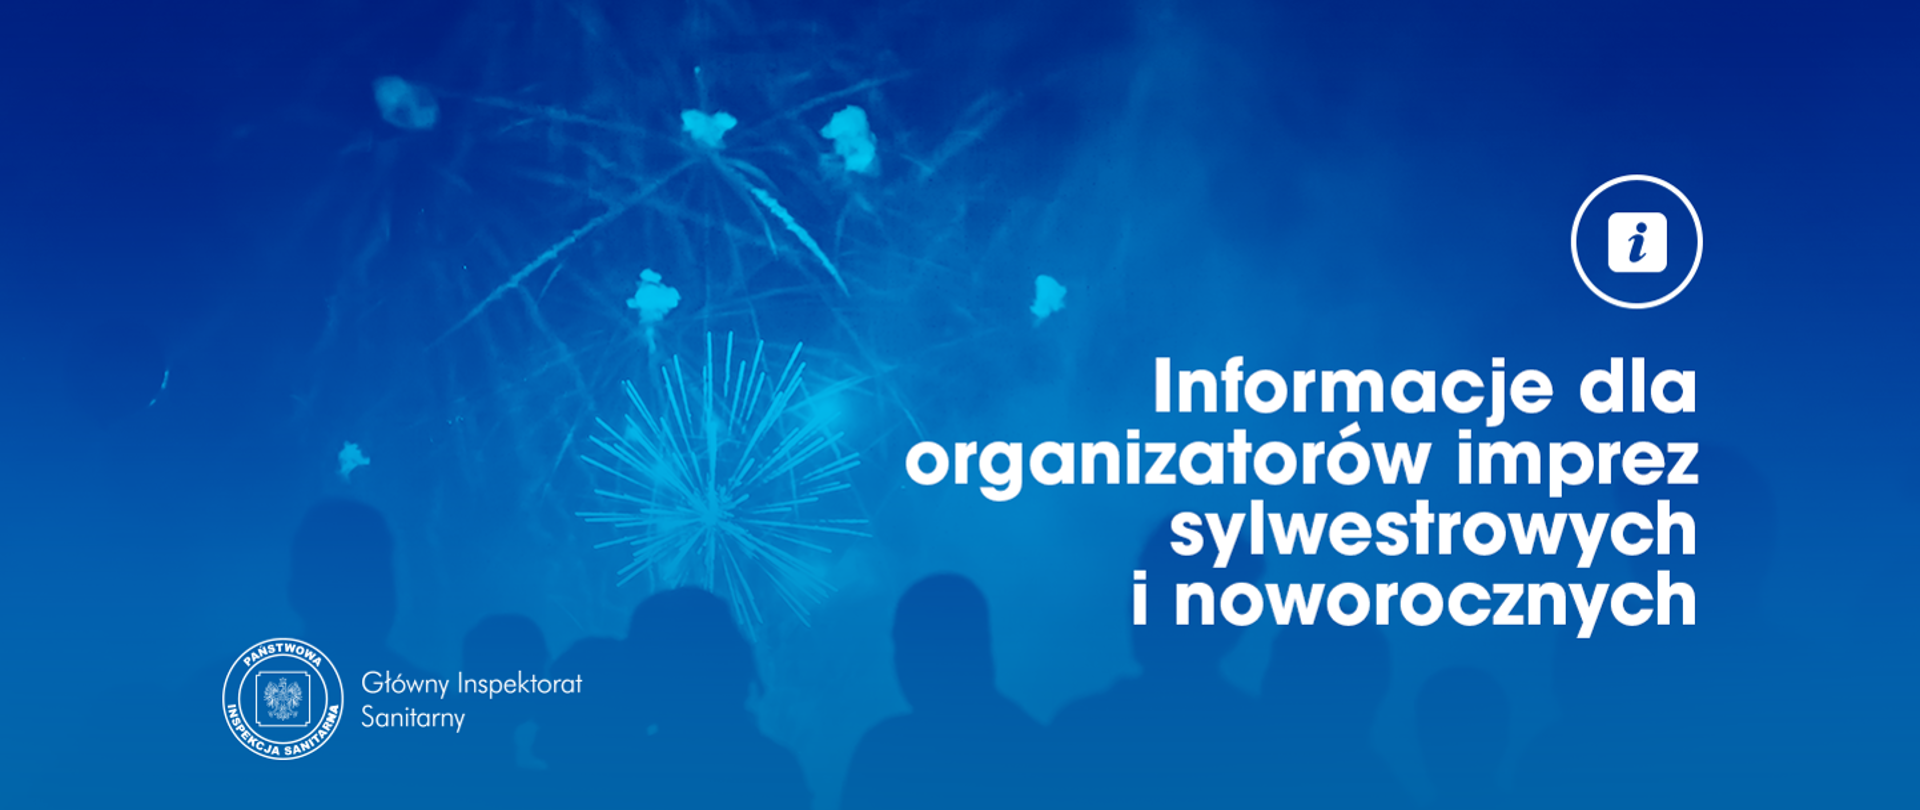 Niebieski baner z napisem: Informacje dla organizatorów imprez sylwestrowych i noworocznych 